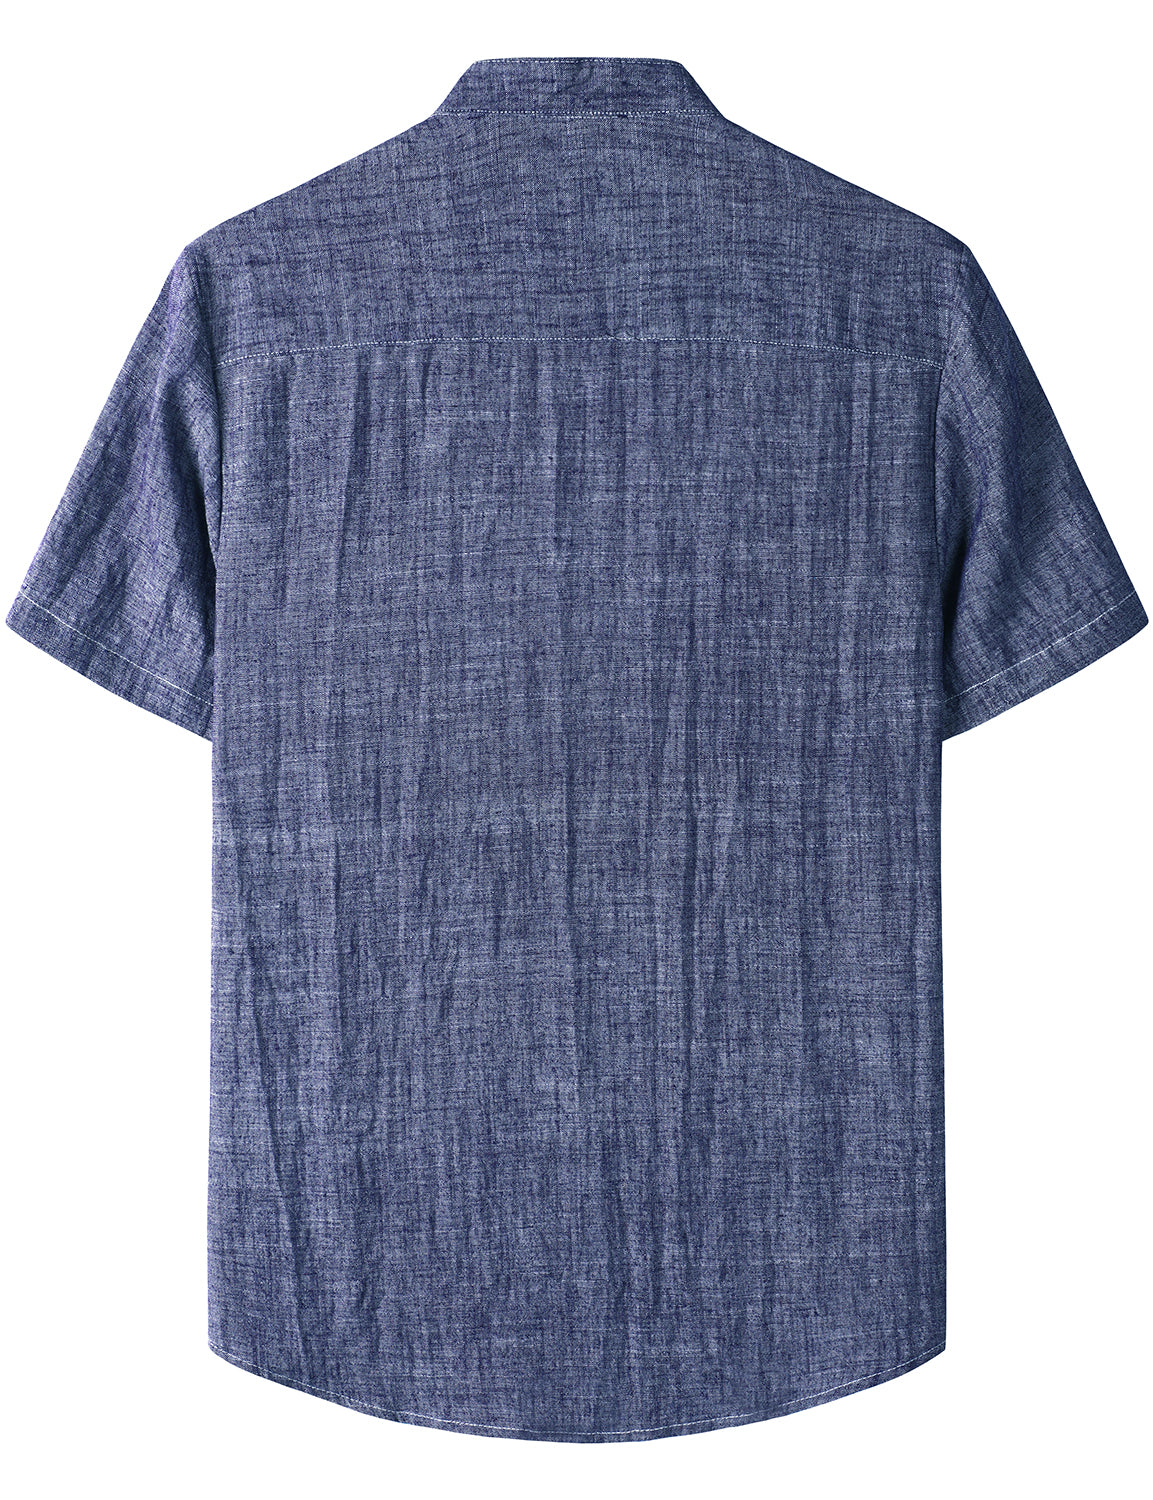 JOGAL Men's Cotton Linen Henley Shirt Short Sleeve Casual Botton Down Hawaiian Beach Shirts